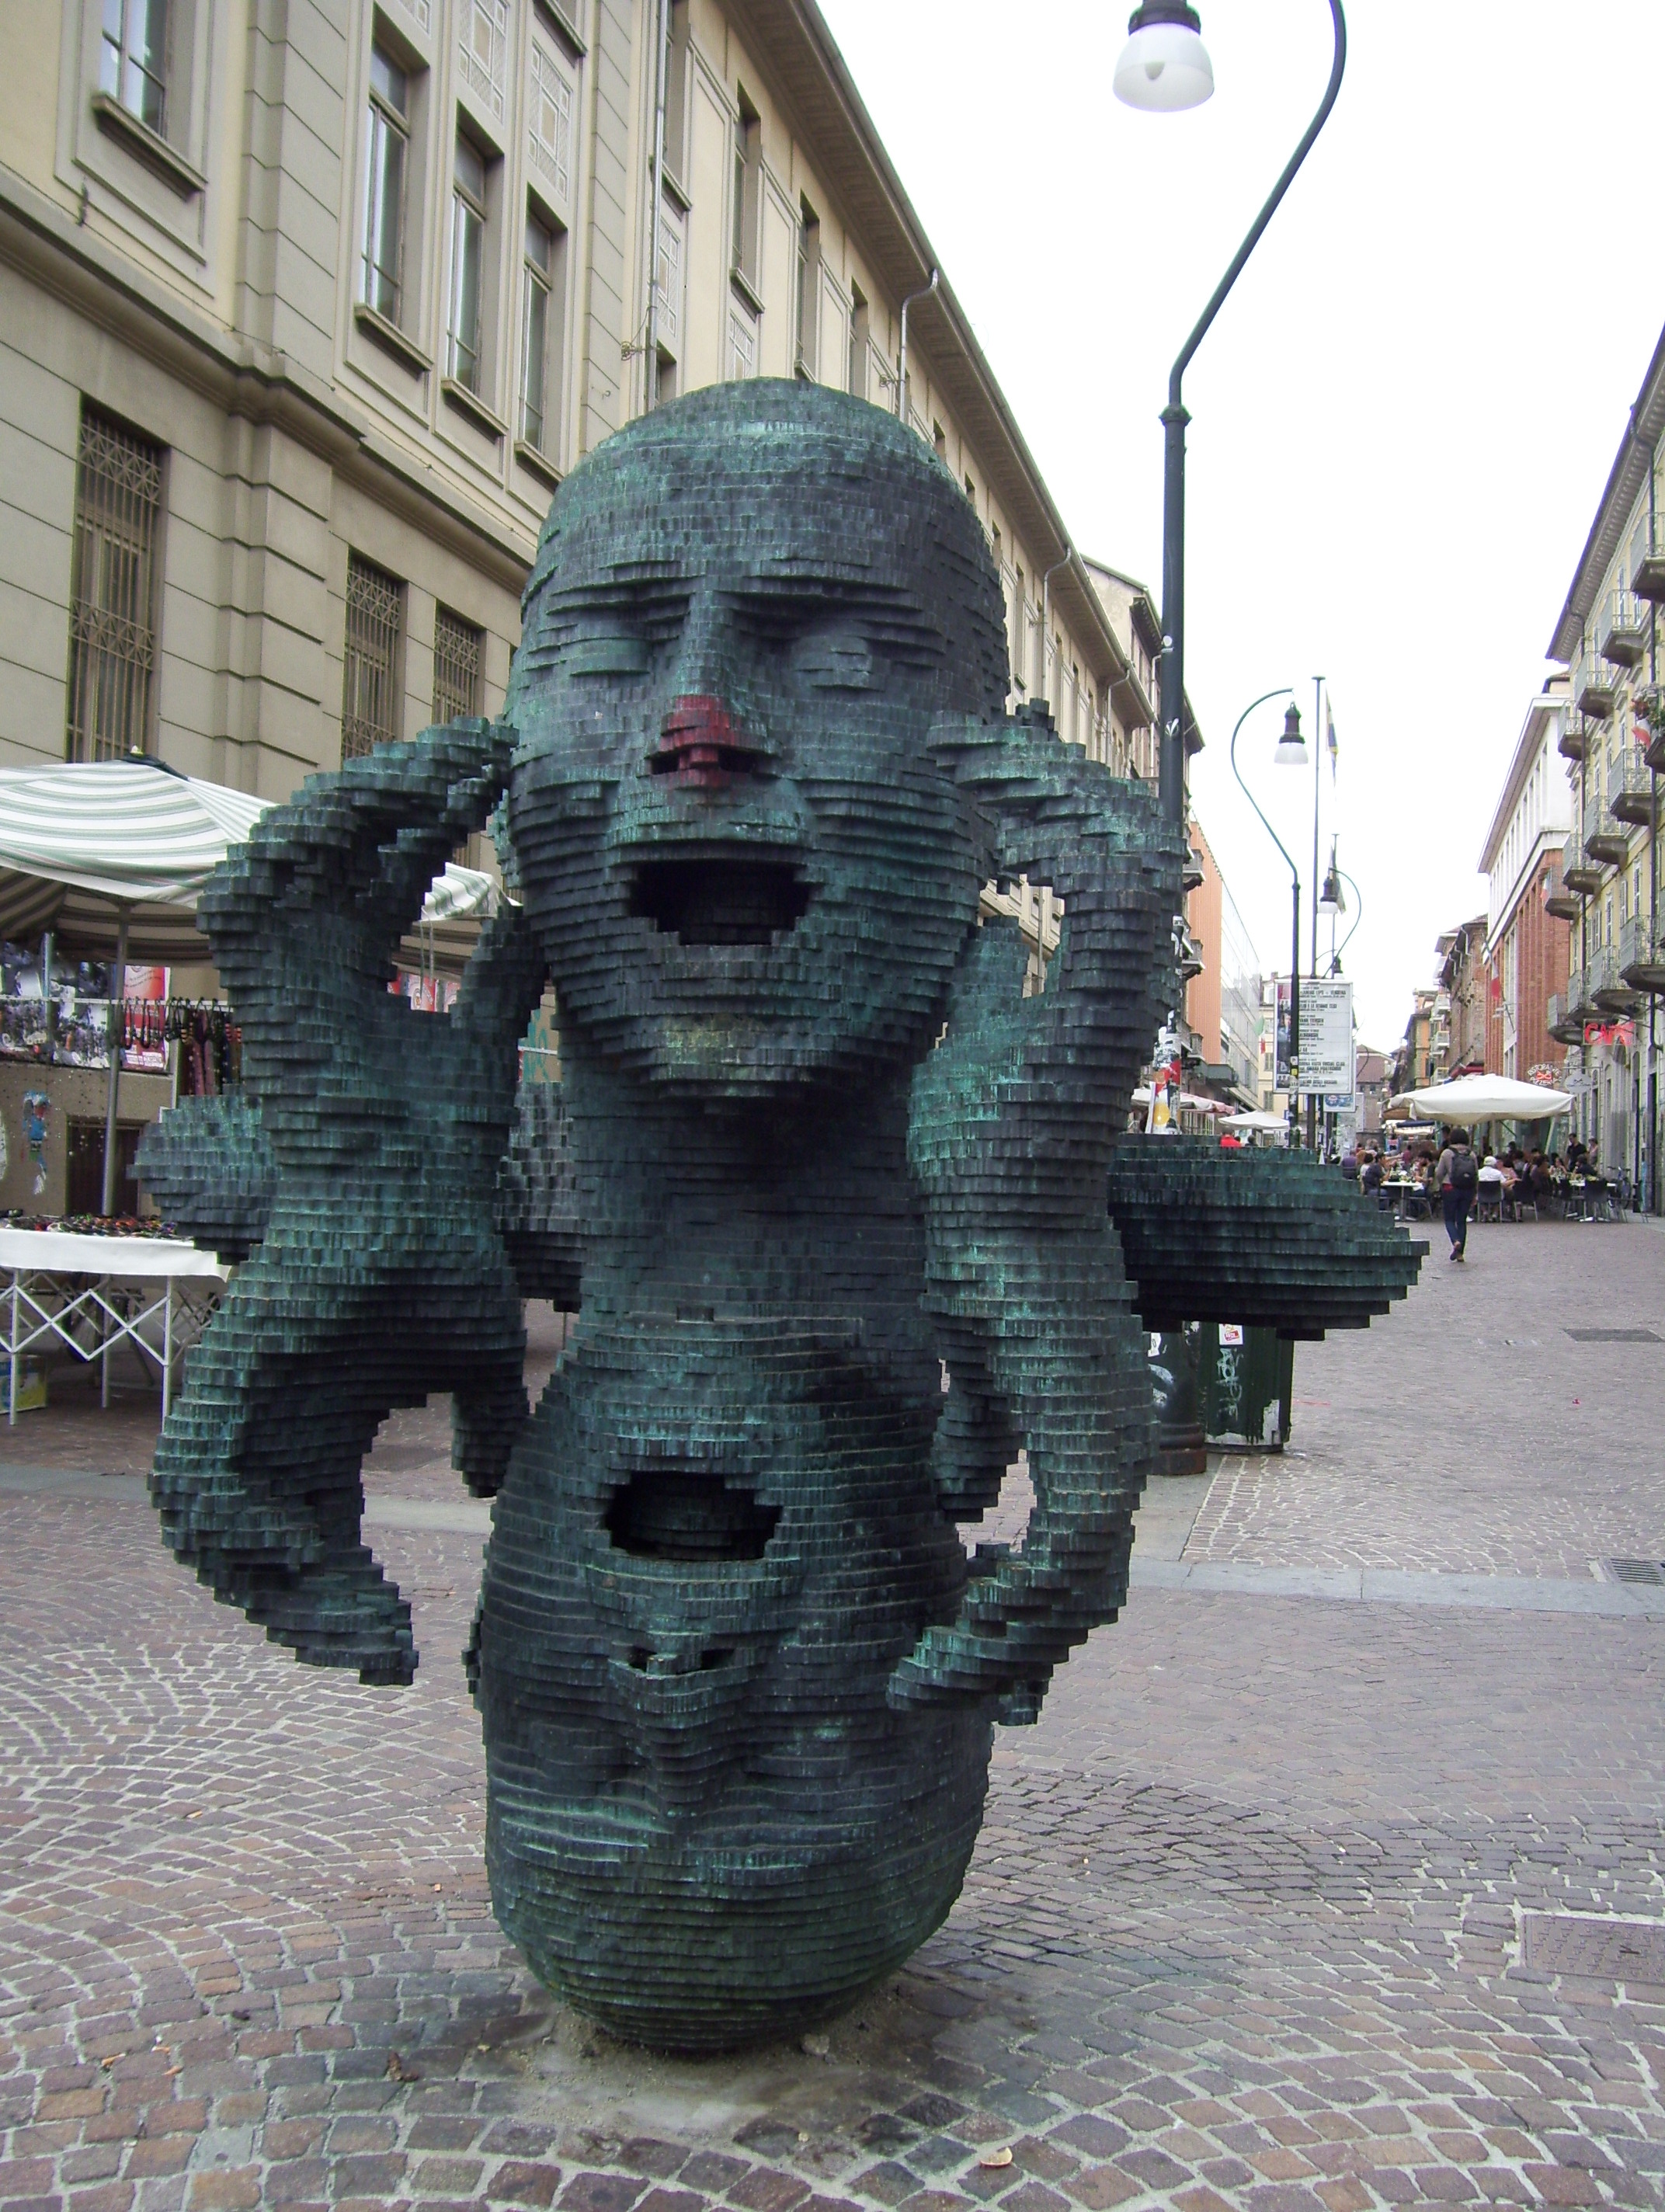 Escultura en Via G. Verdi: "¿Adónde voy???"